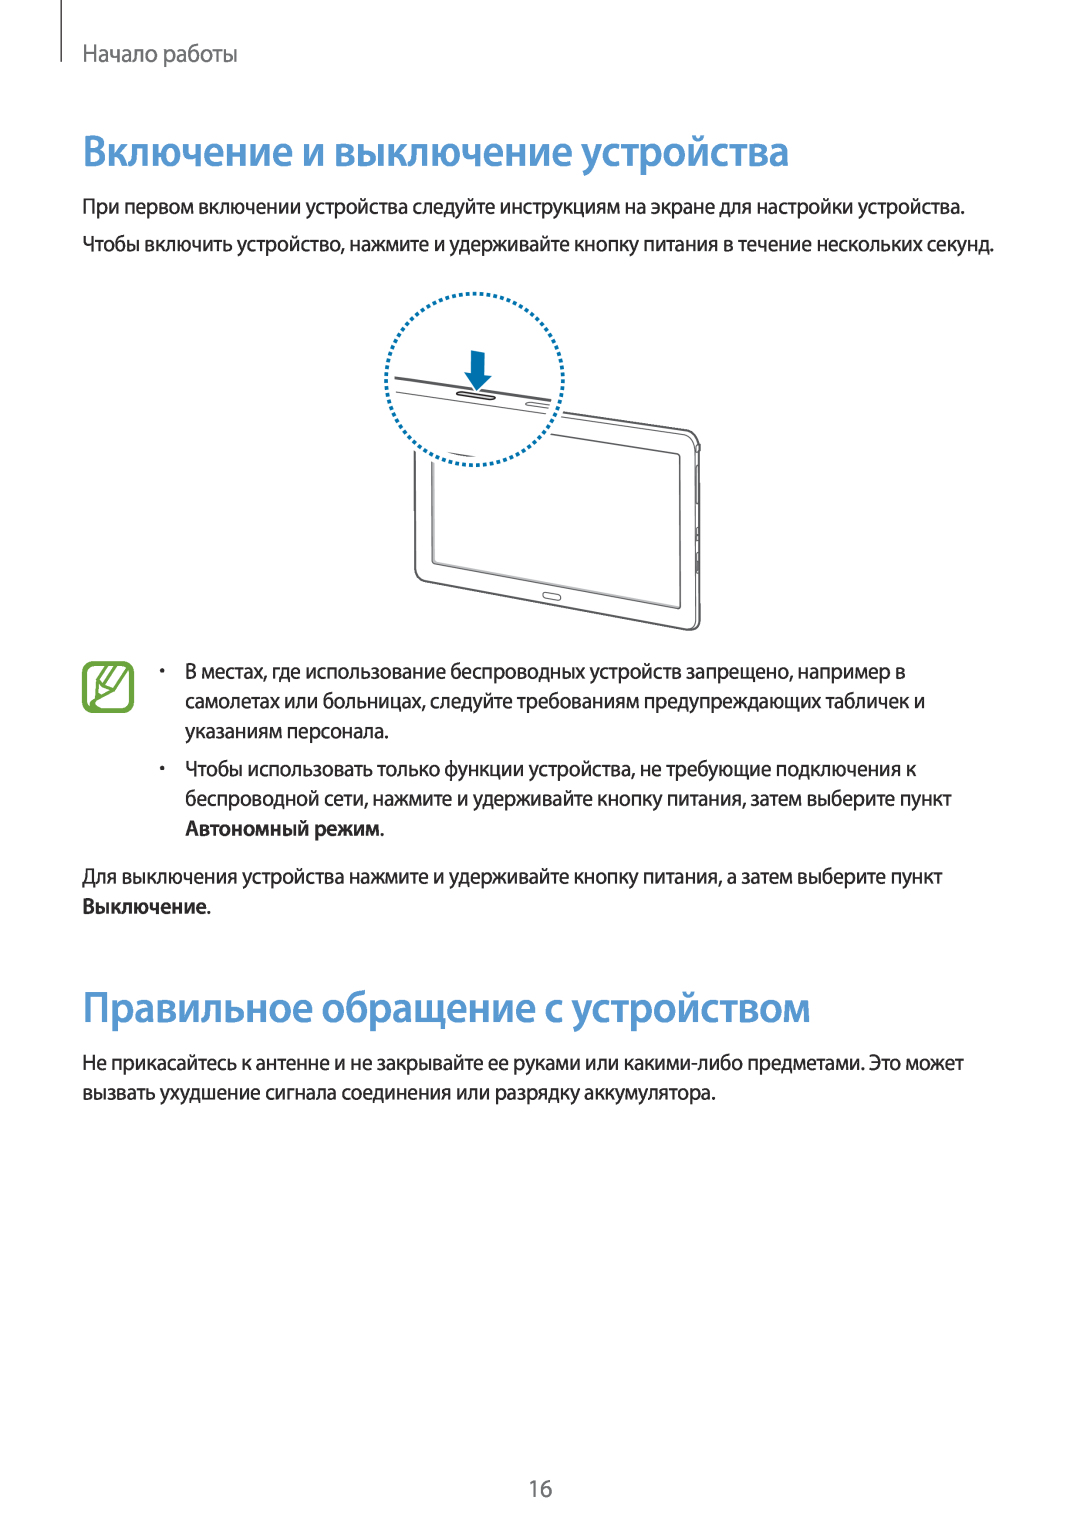 Samsung SM-P9000ZKASEB manual Включение и выключение устройства, Правильное обращение с устройством, Начало работы 